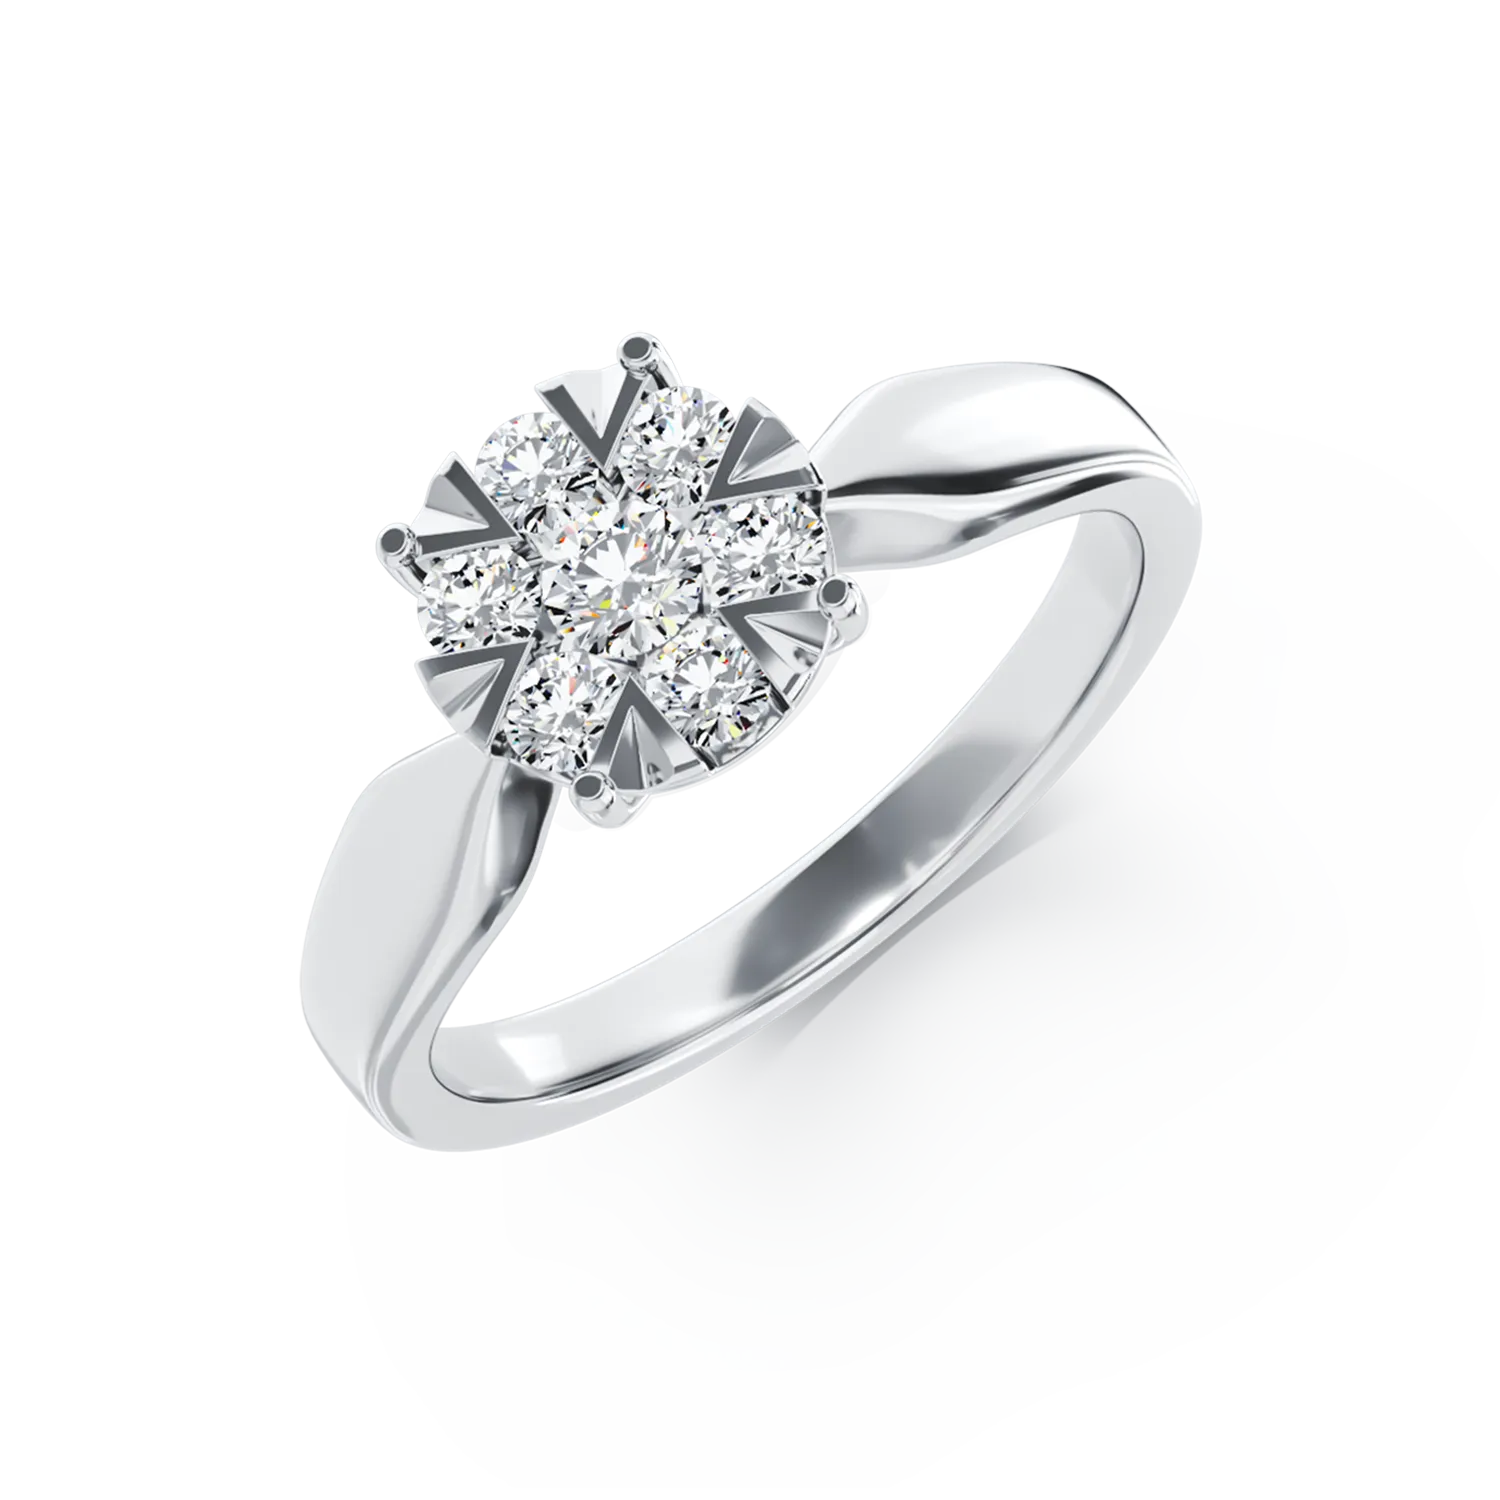 Eljegyzési gyűrű 18K-os fehér aranyból 0.34ct gyémánttal. Gramm: 2,45